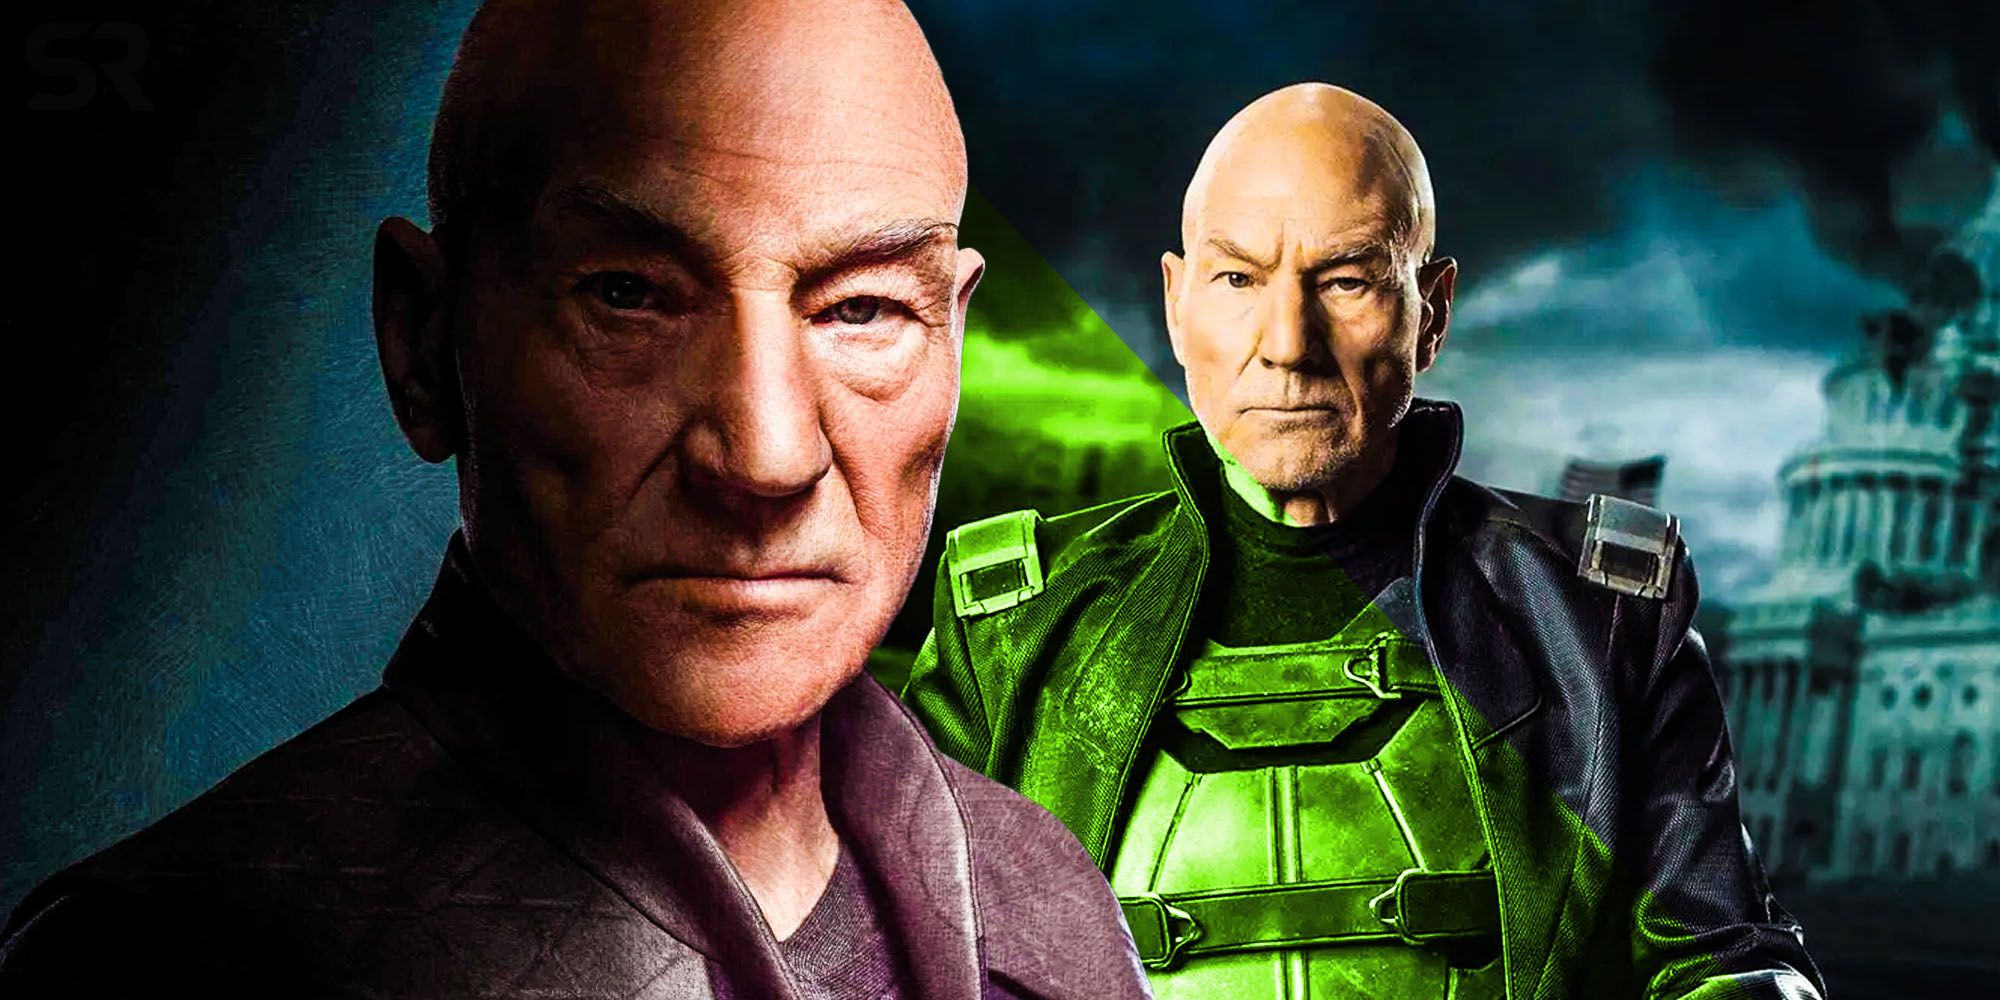 La resurrección de Star Trek de Picard refleja el arco de X-Men de Patrick Stewart